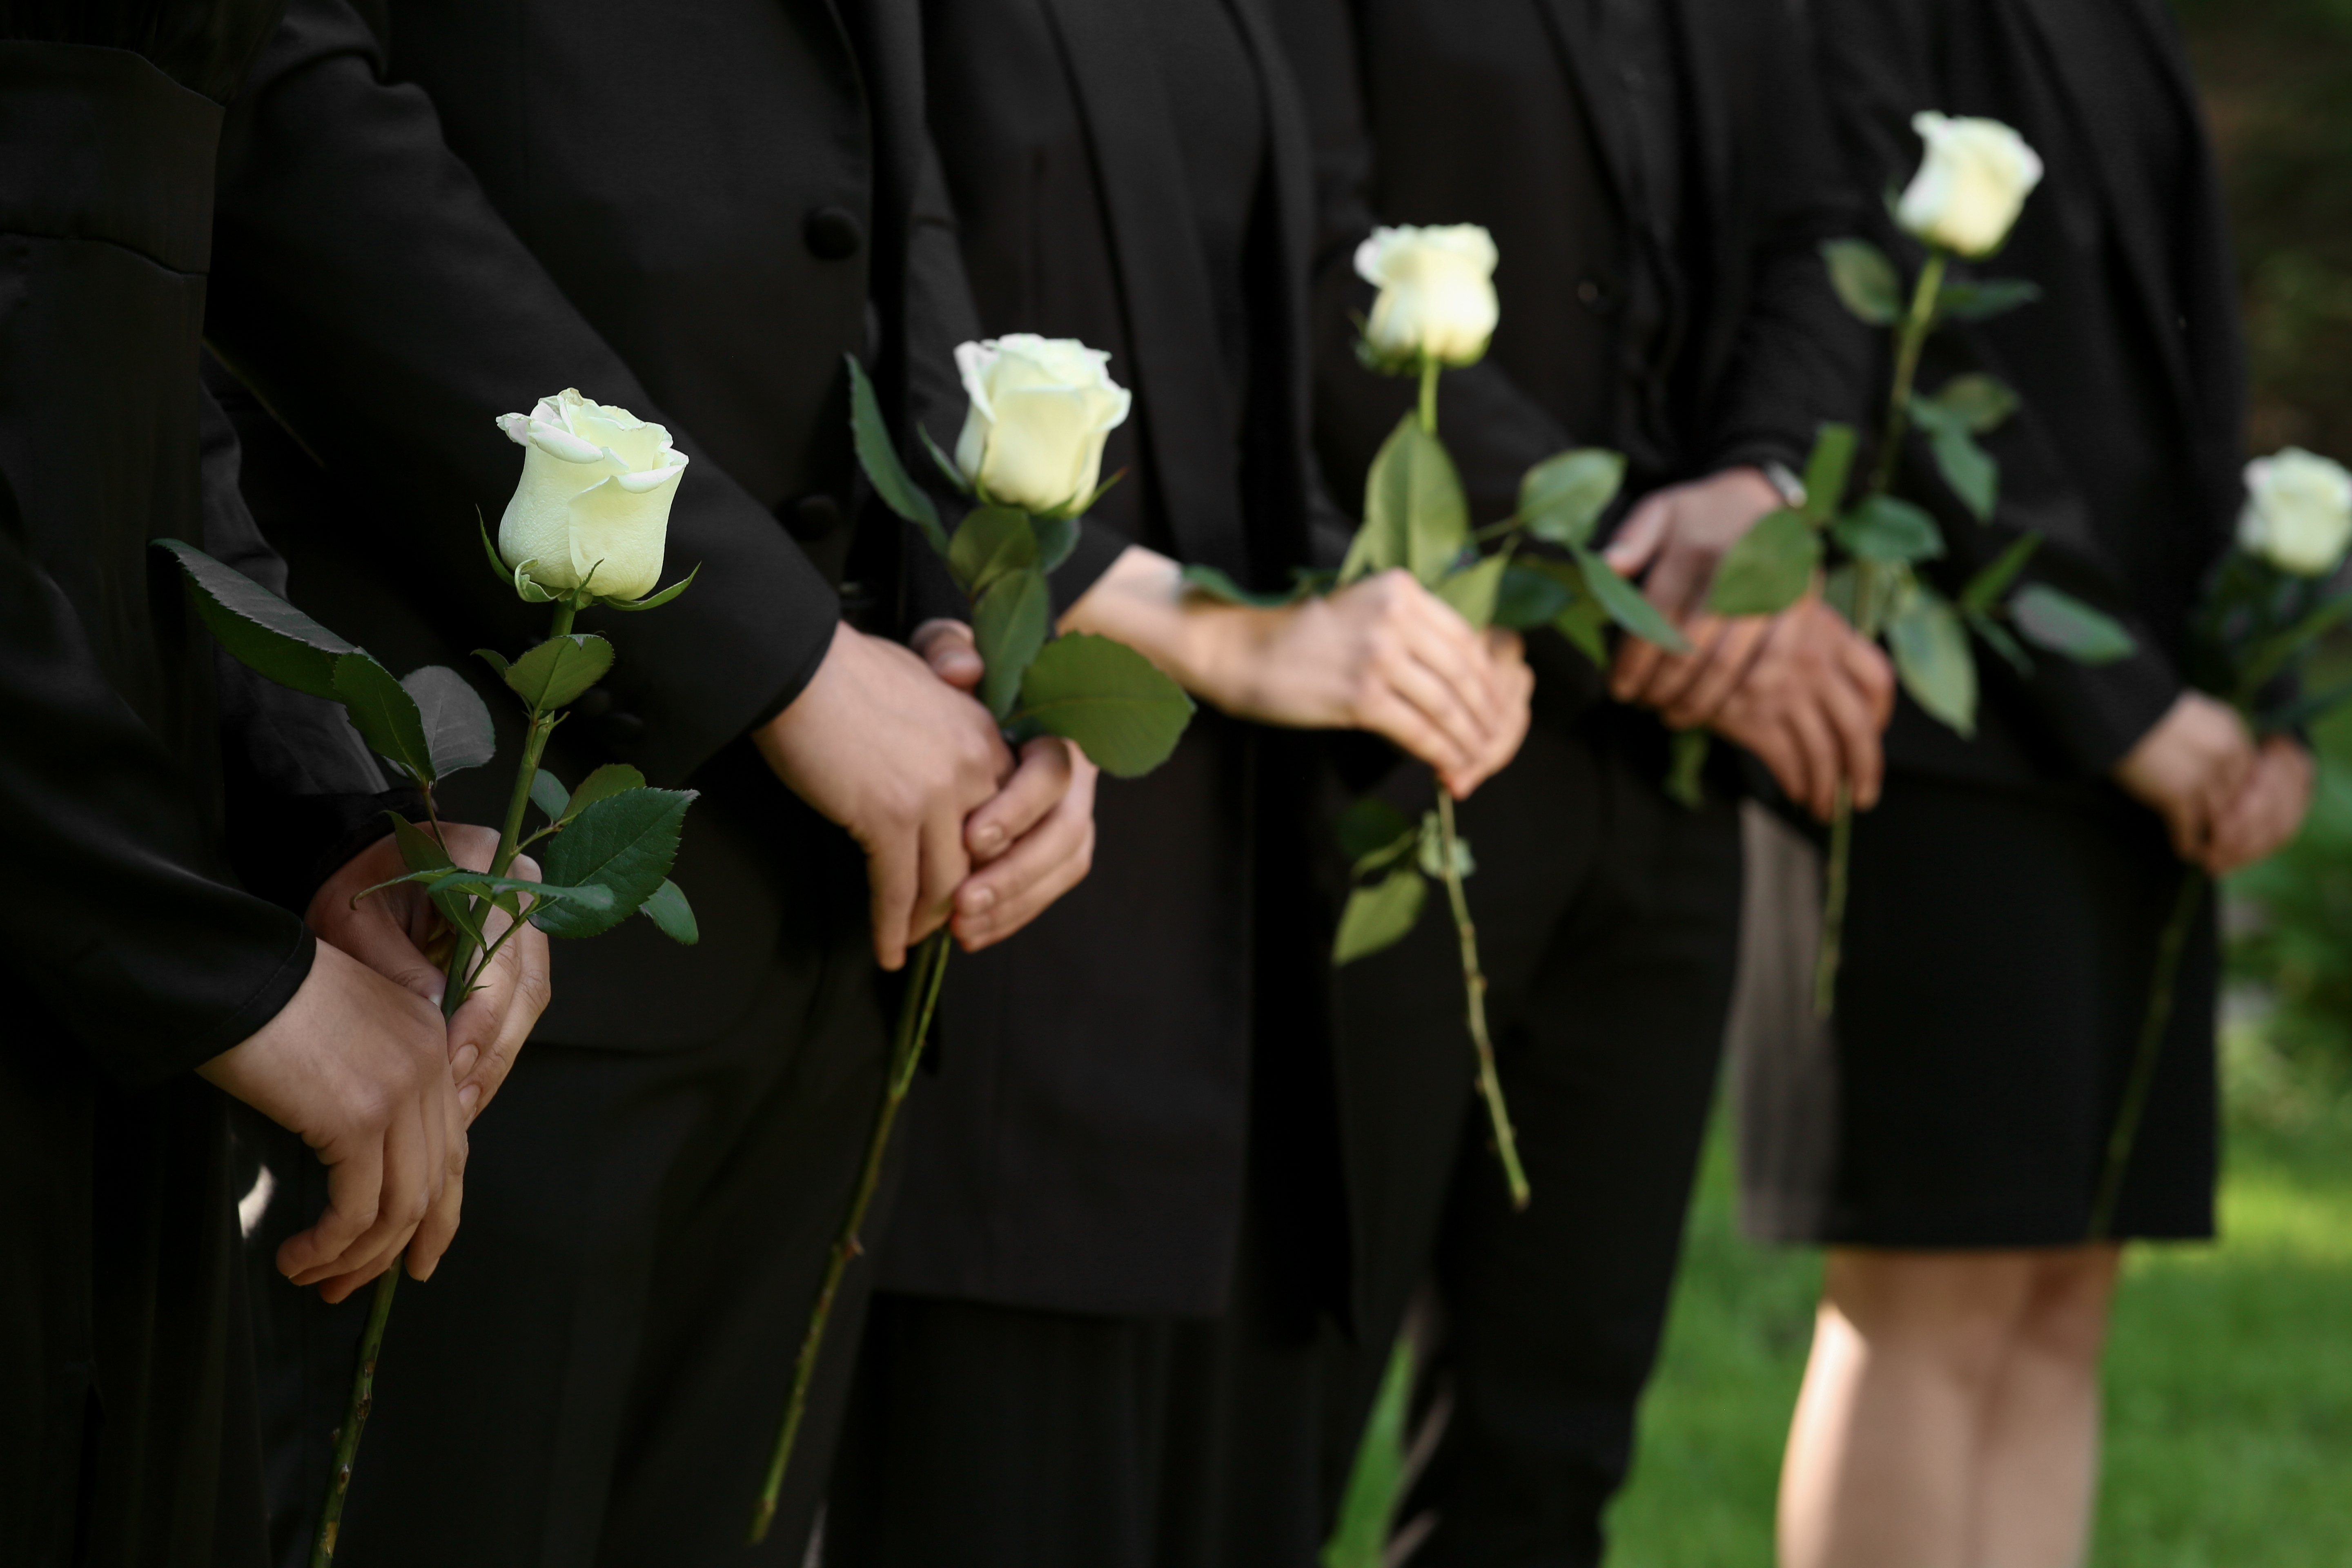 Des personnes à un enterrement tenant des roses blanches | Source : Shutterstock